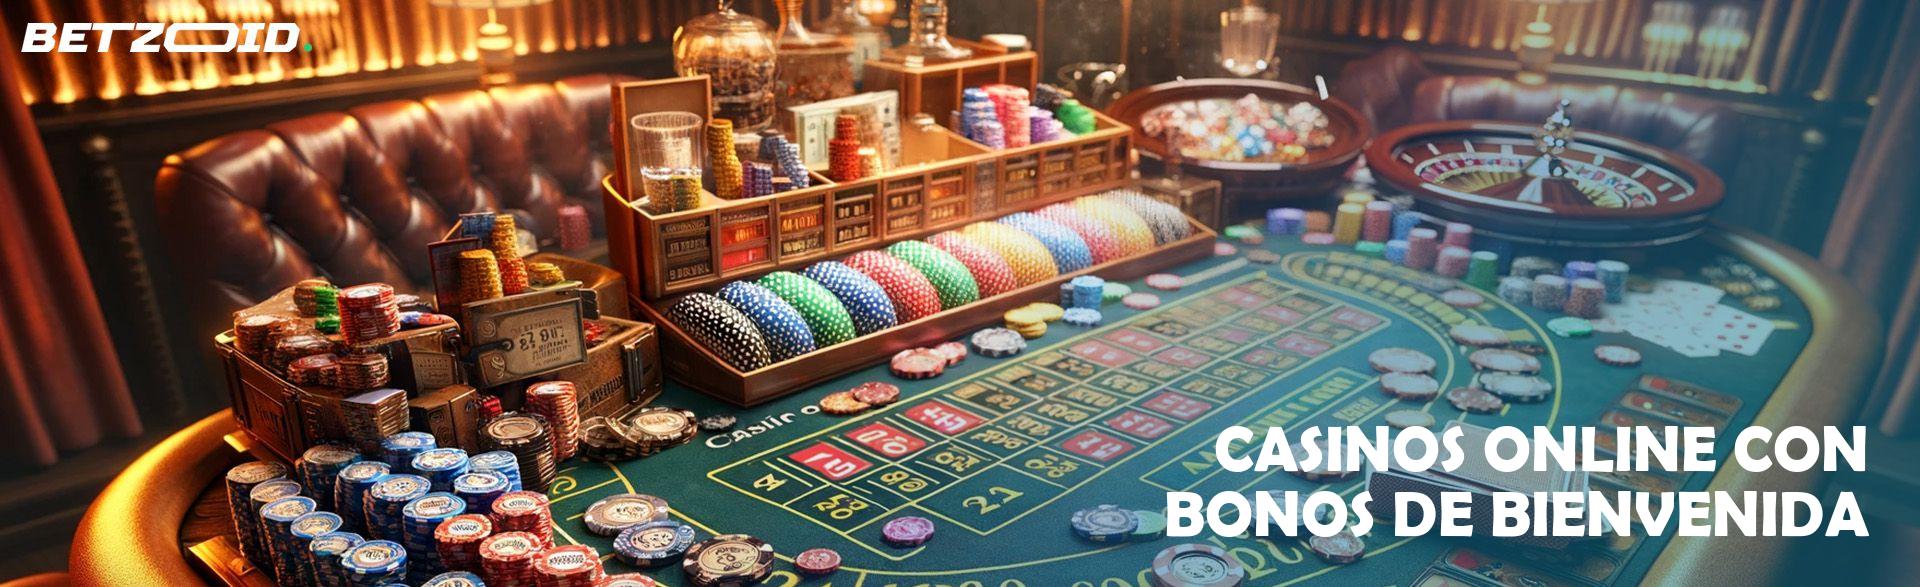 Casinos Online con Bonos de Bienvenida.